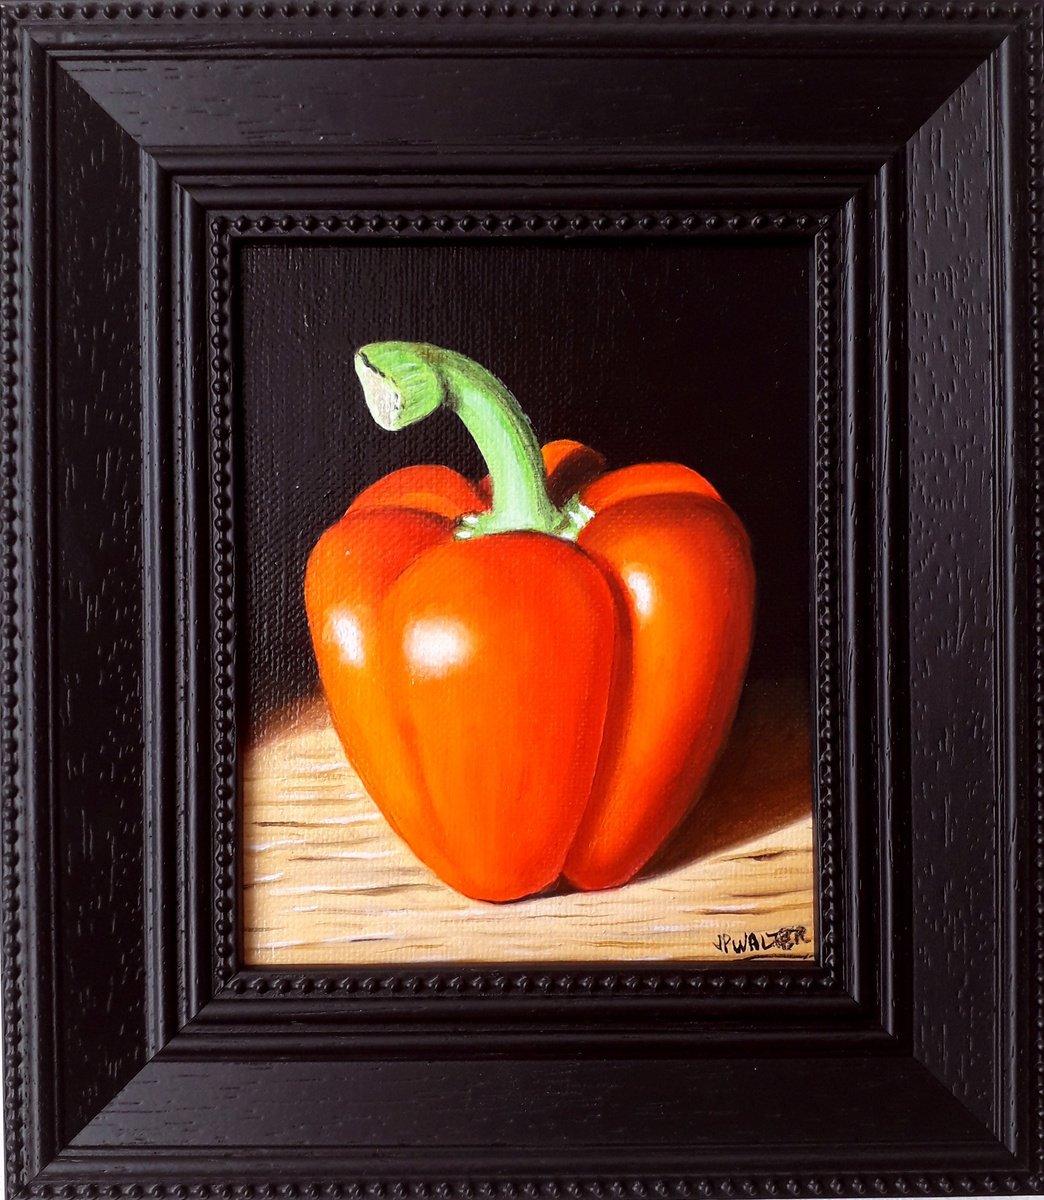 Pepper in chiaroscuro by Jean-Pierre Walter